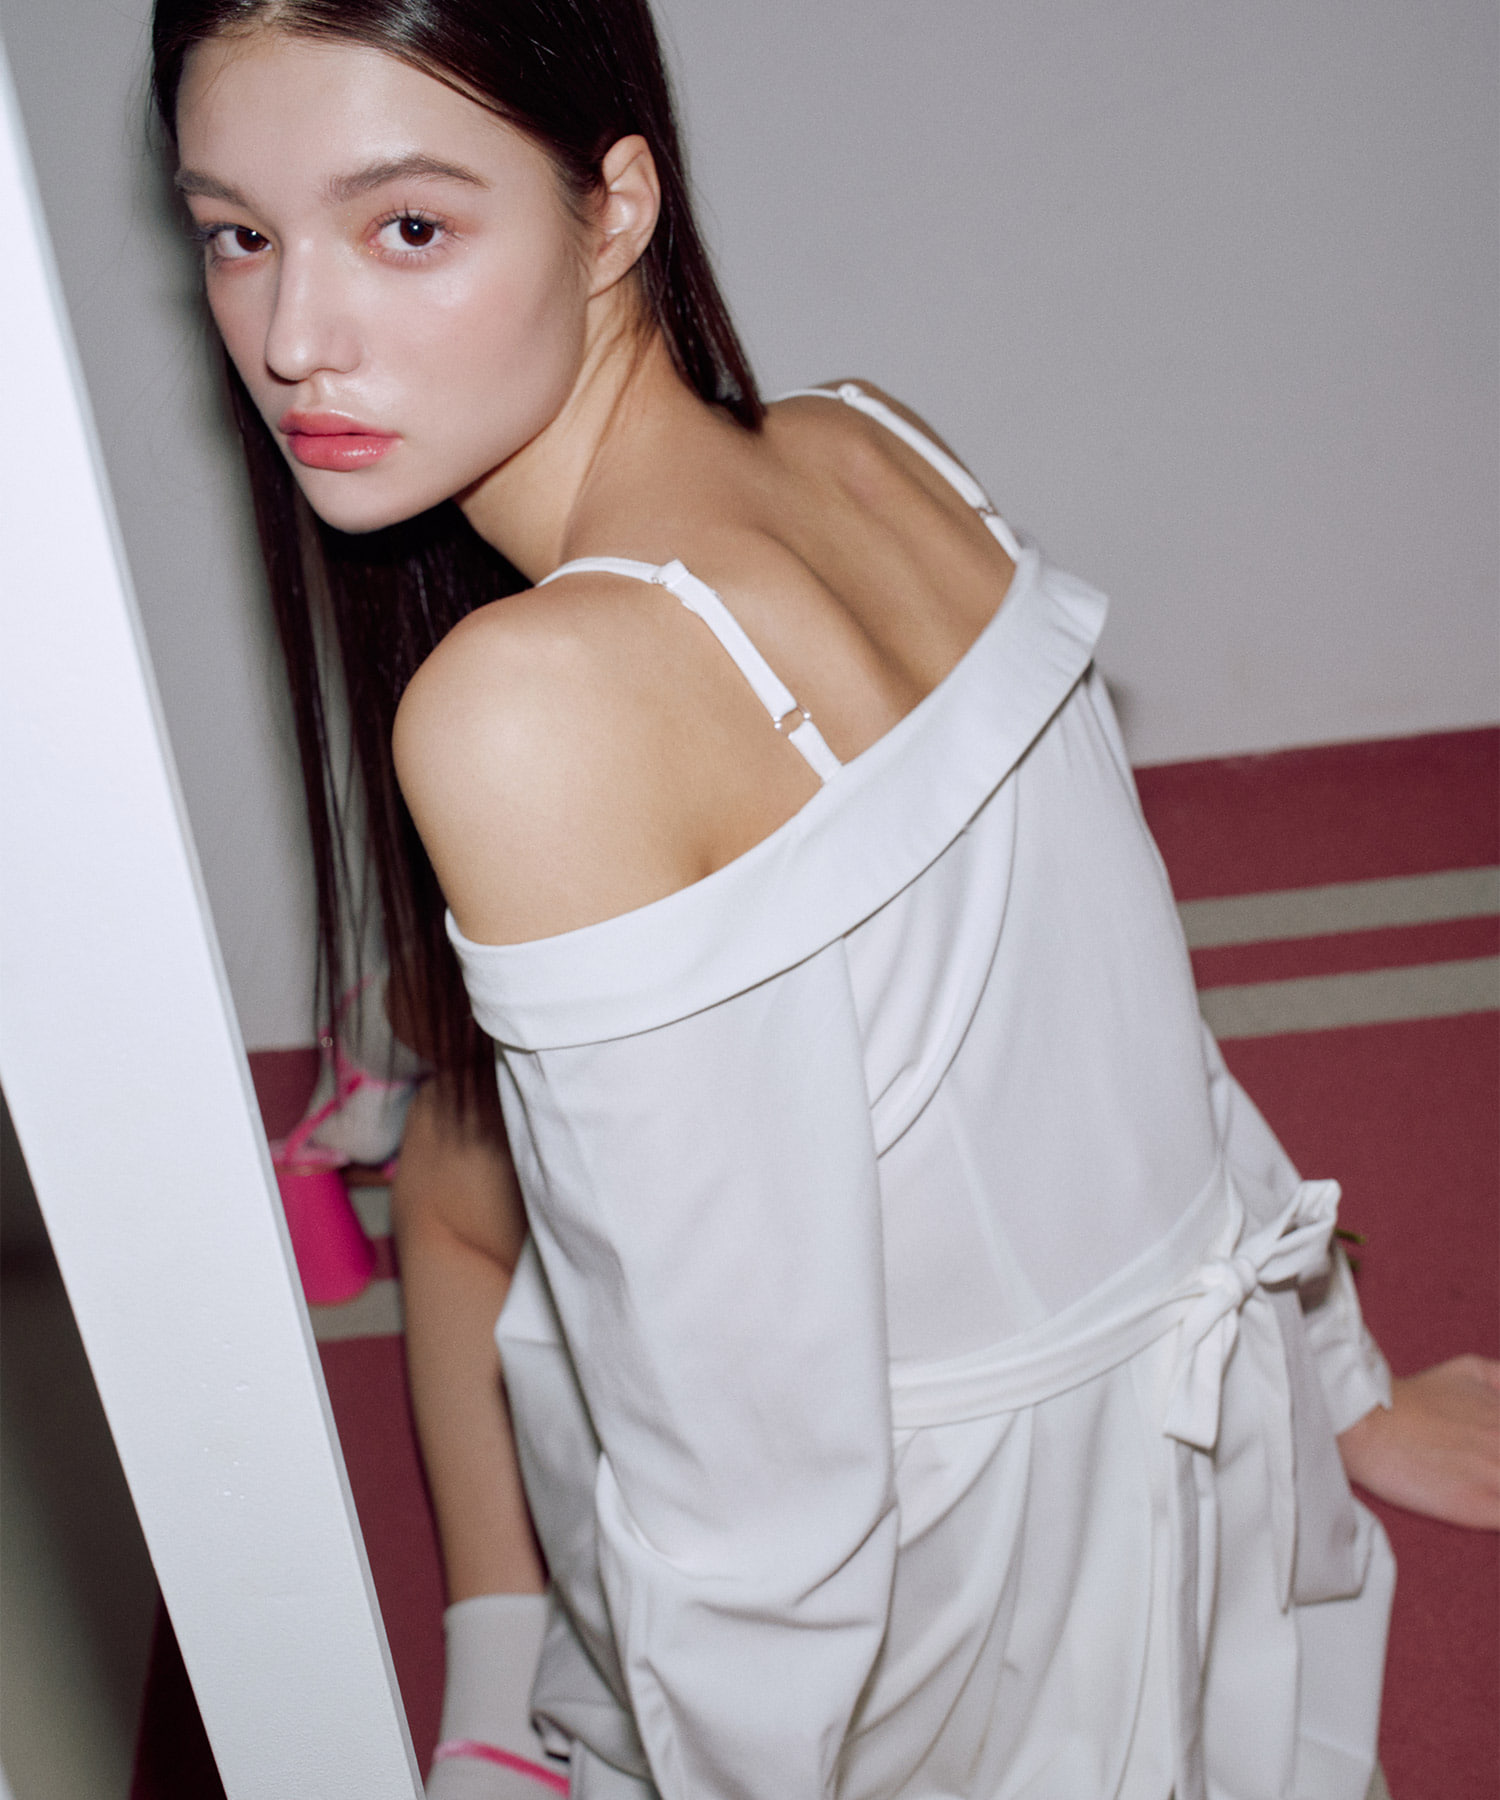 오프숄더 하프 플리츠 셔츠 원피스 [WHITE] 김나영이 착용한 제로플래닛